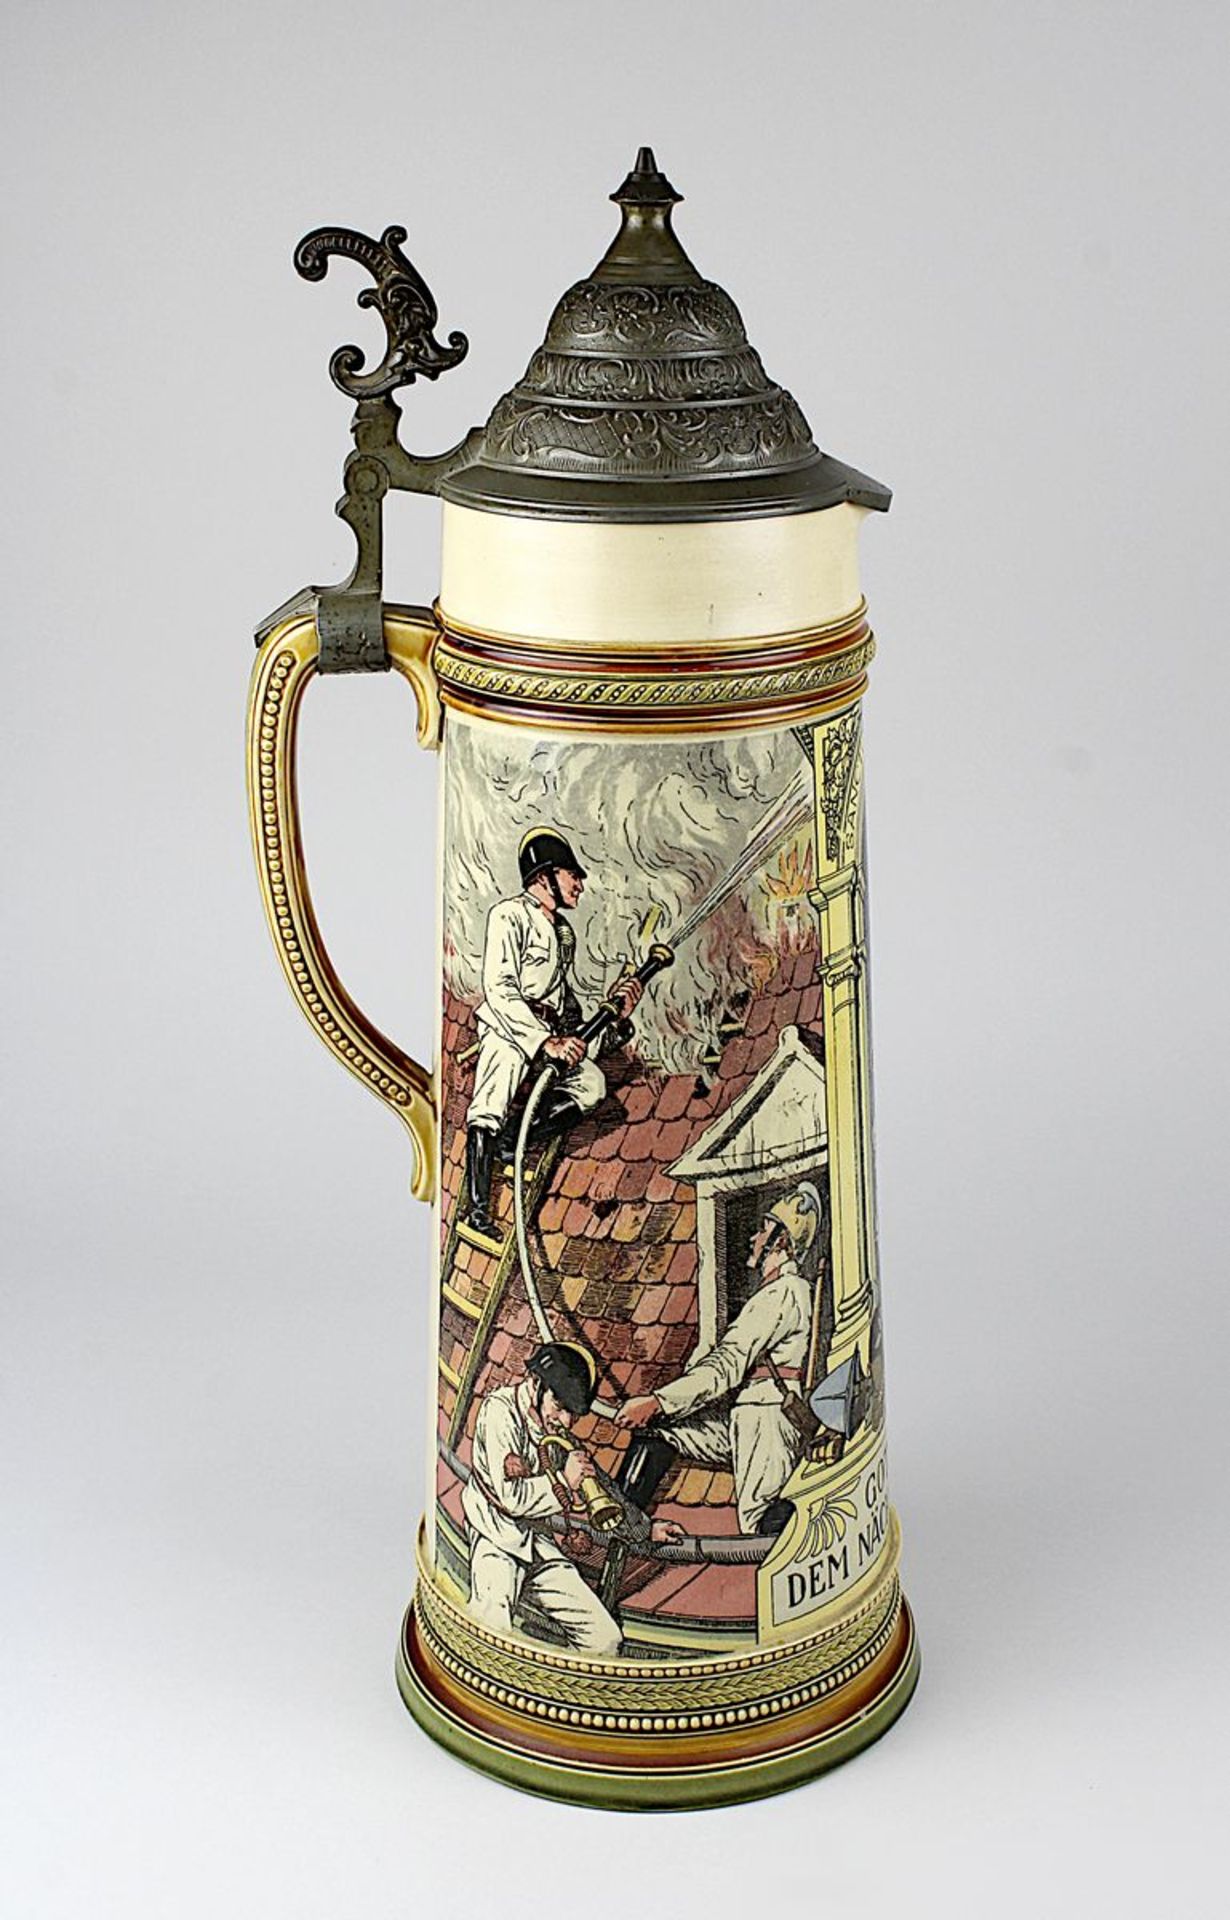 Gr. V&B Mettlach-Feuerwehr-Krug, 1899, Keramik, mit reliefierten Rändern und Griff, Wandung mit - Bild 4 aus 4